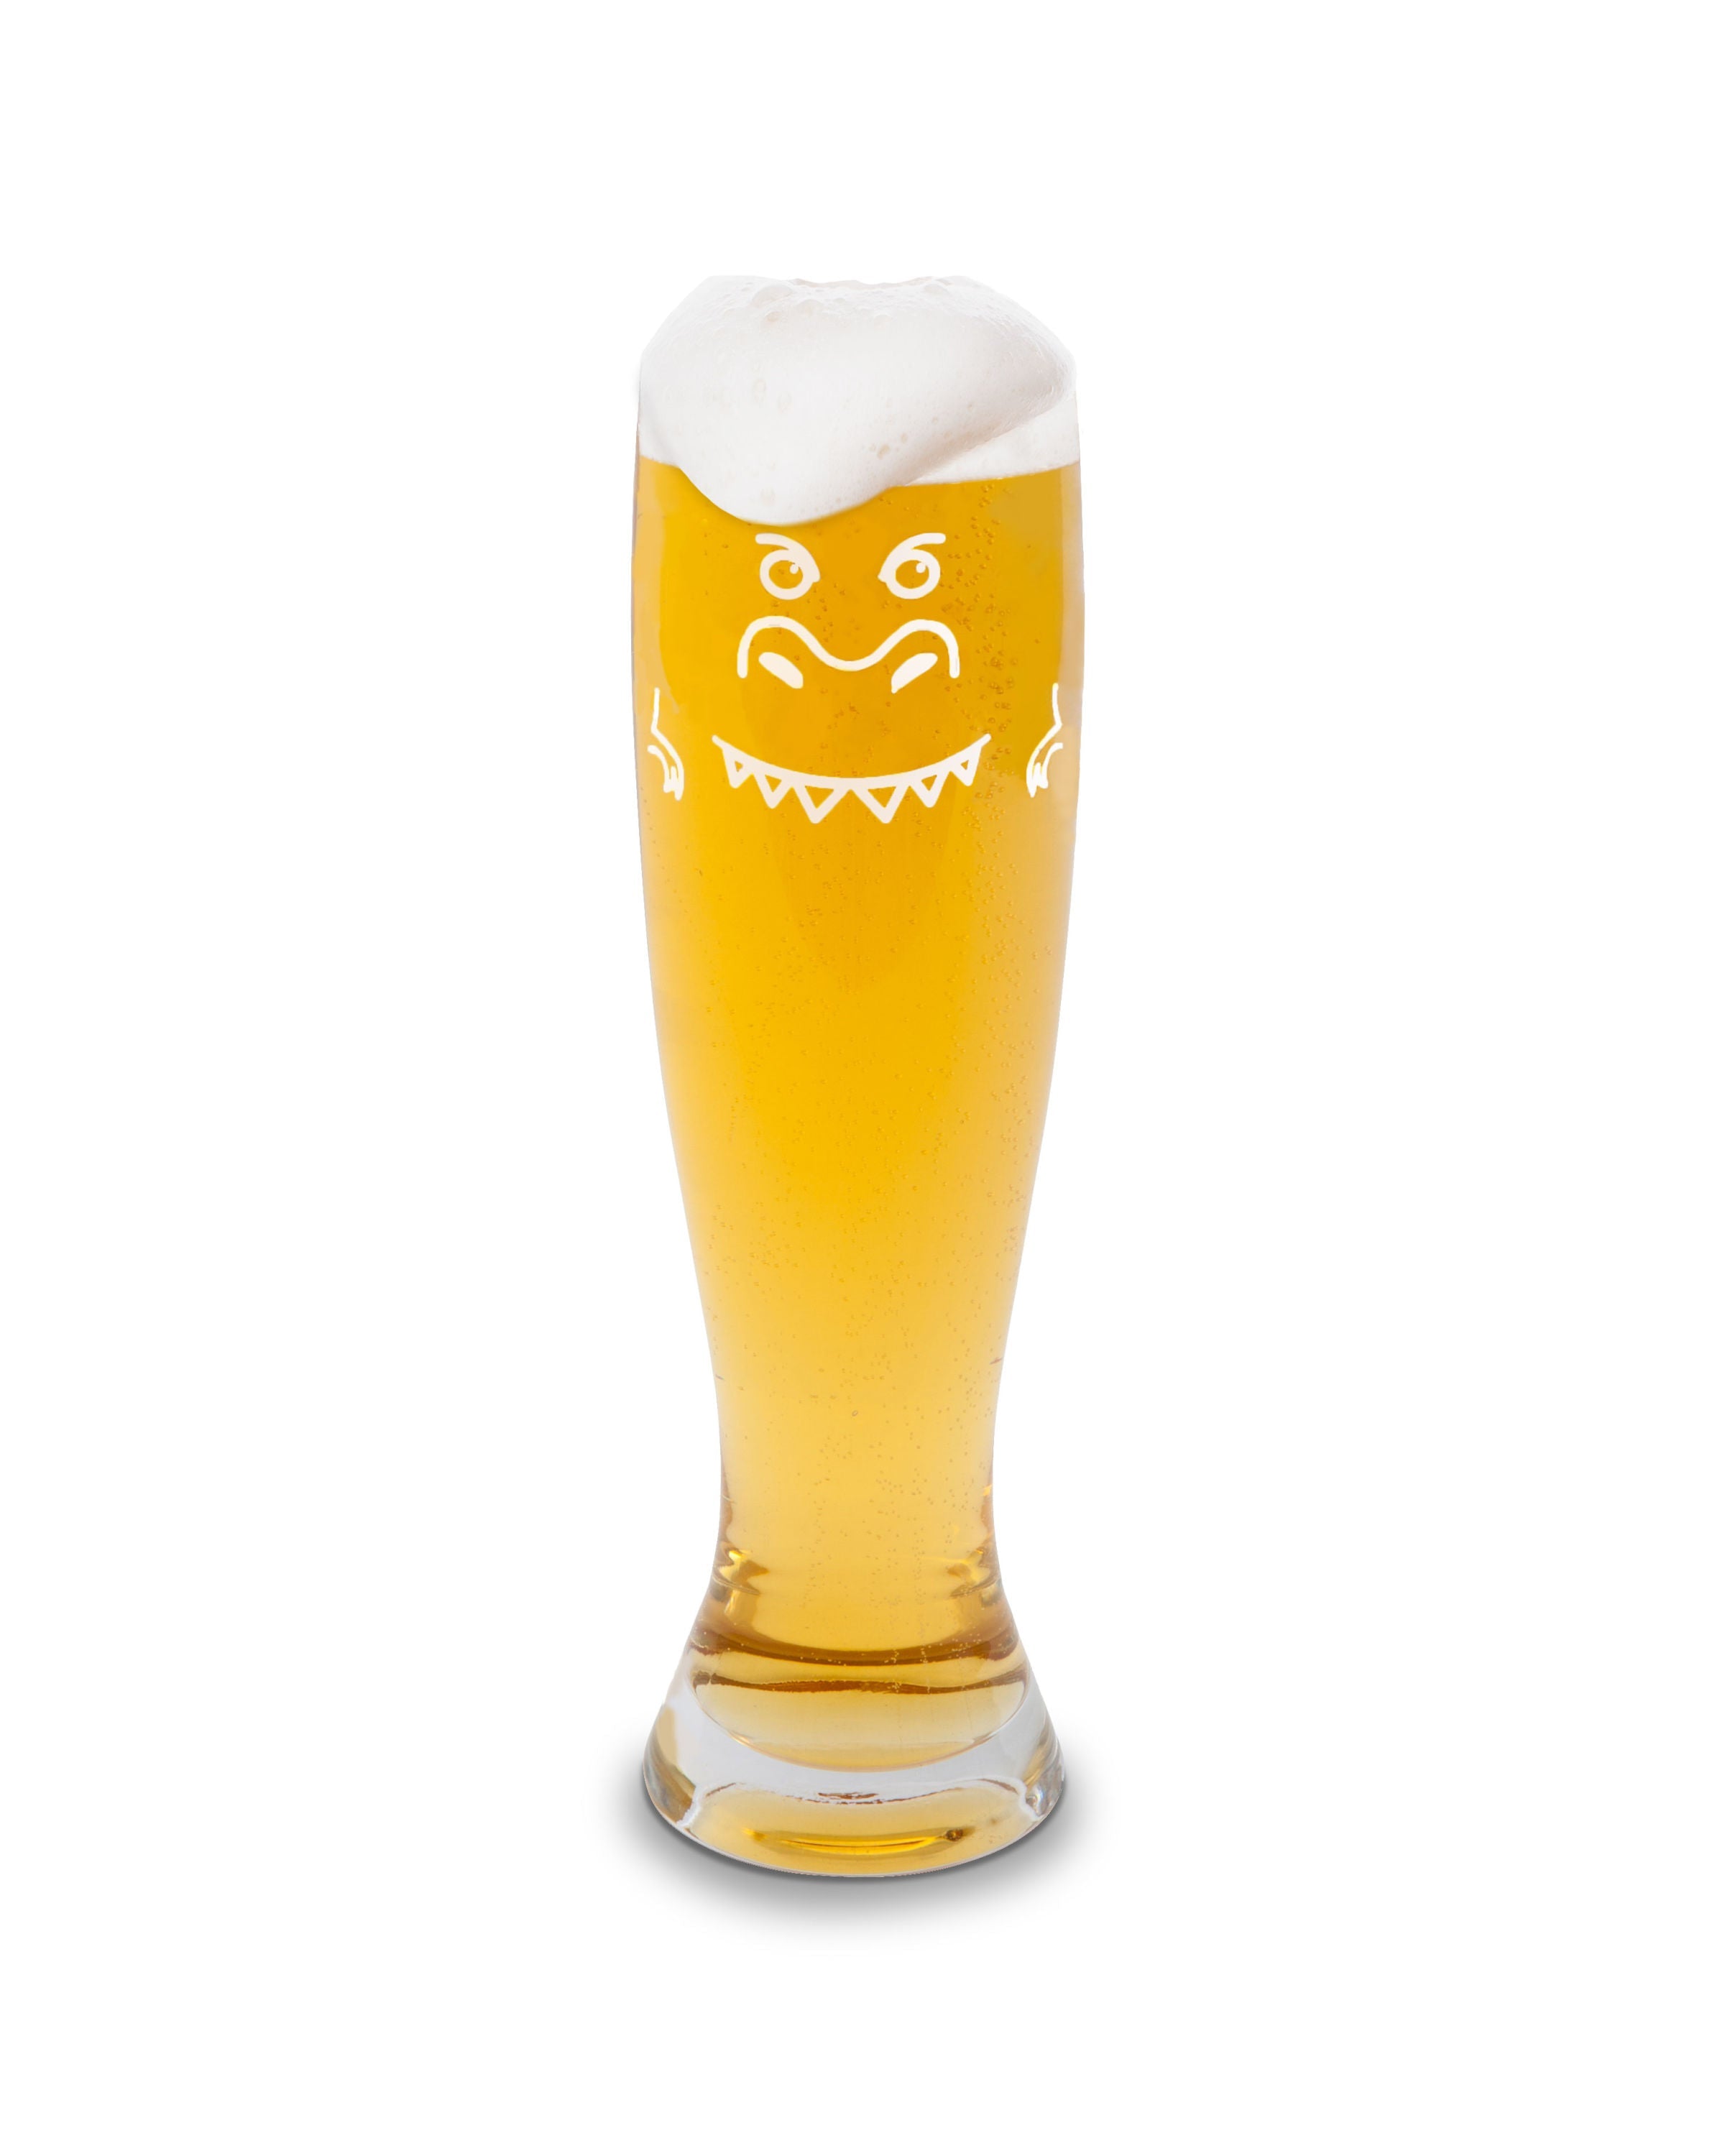 The Beer-Zilla Giant Beer Glass